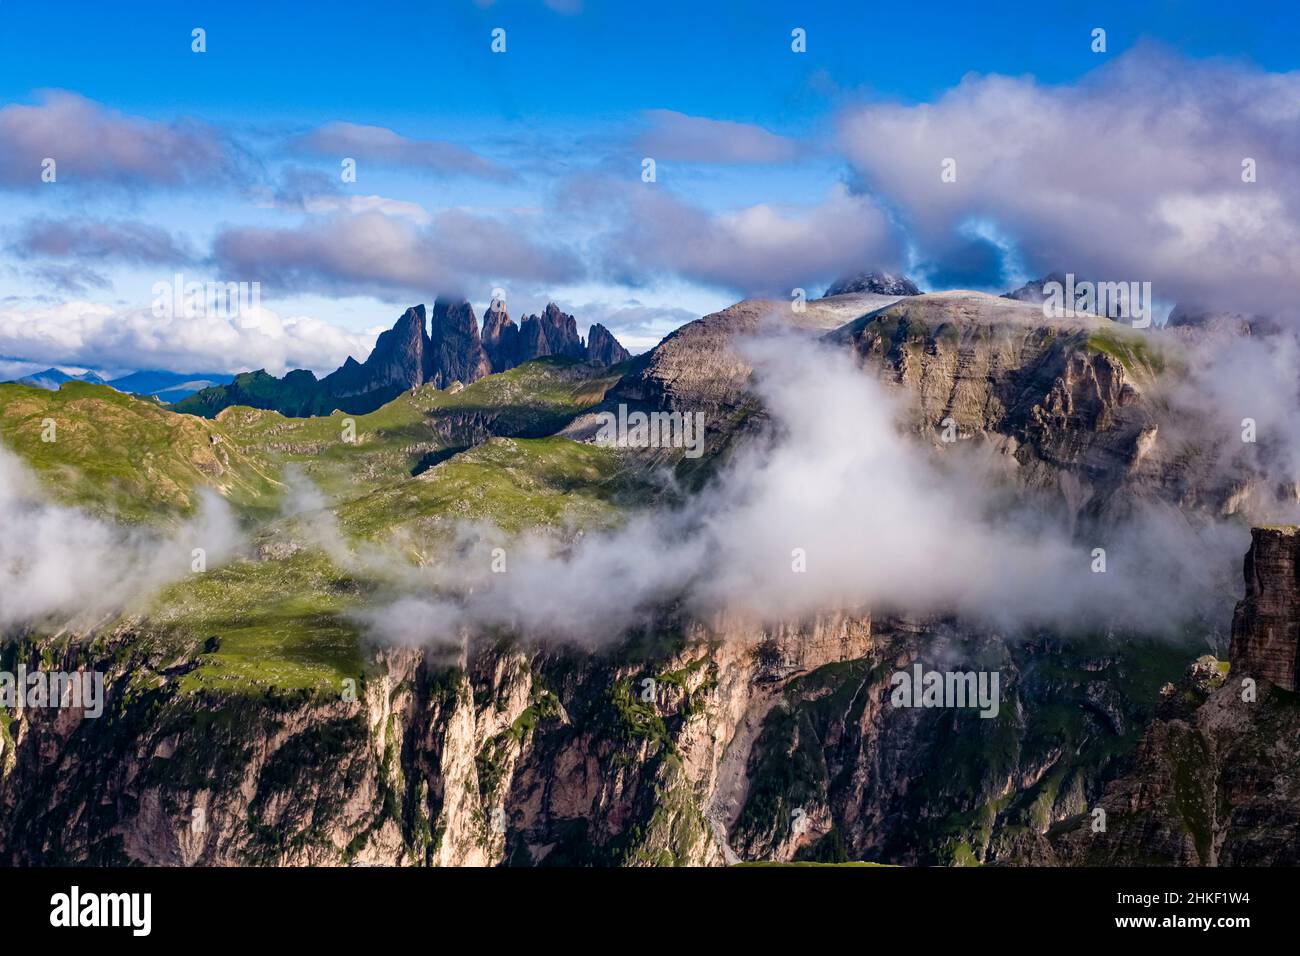 Las caras de roca del grupo Puez y las cumbres del macizo de Odle Geisler en la distancia, visto desde la cumbre del Gran Ciro. Foto de stock